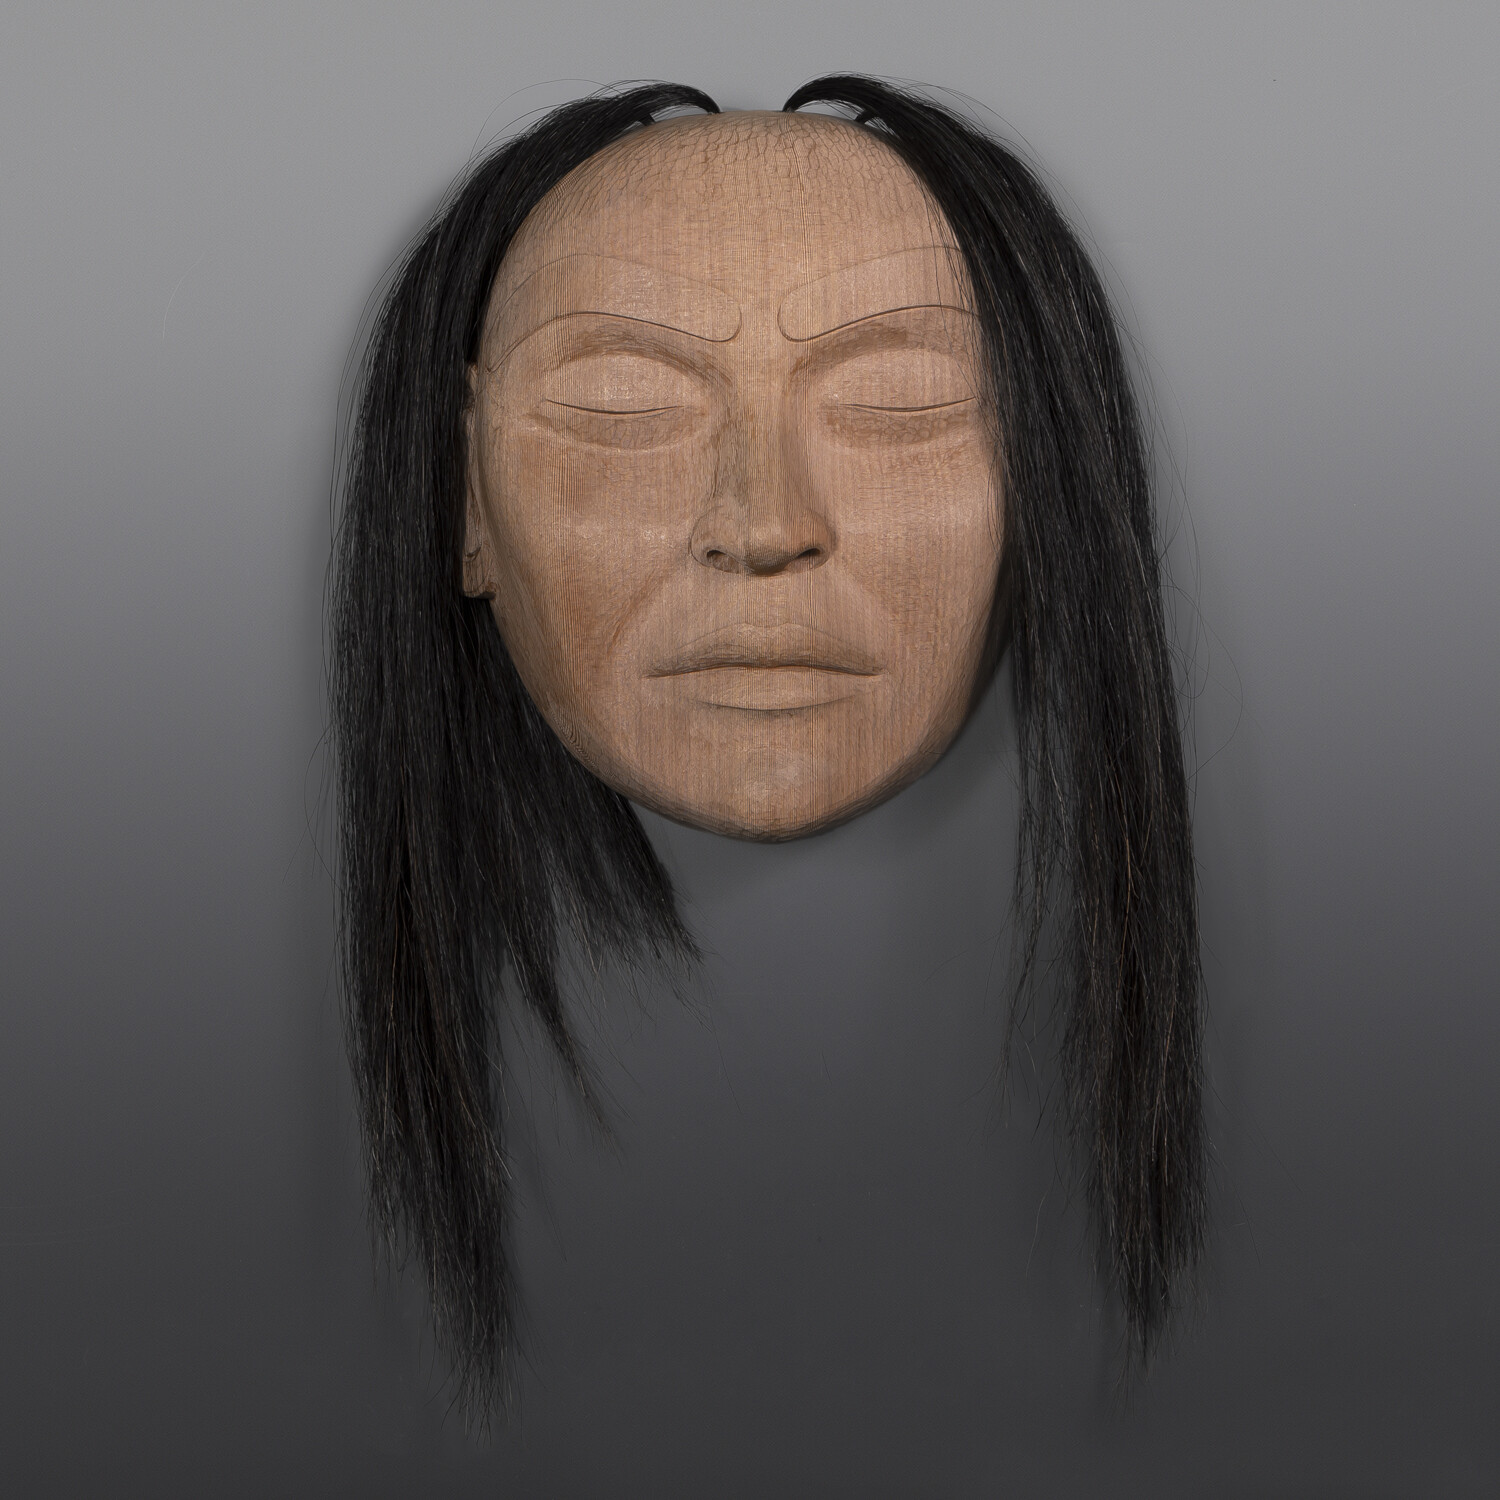 Portrait Mask
Raymond Shaw
Kwakwaka'wakw
Red cedar, horsehair
14" x 13" x 5½”
$4000